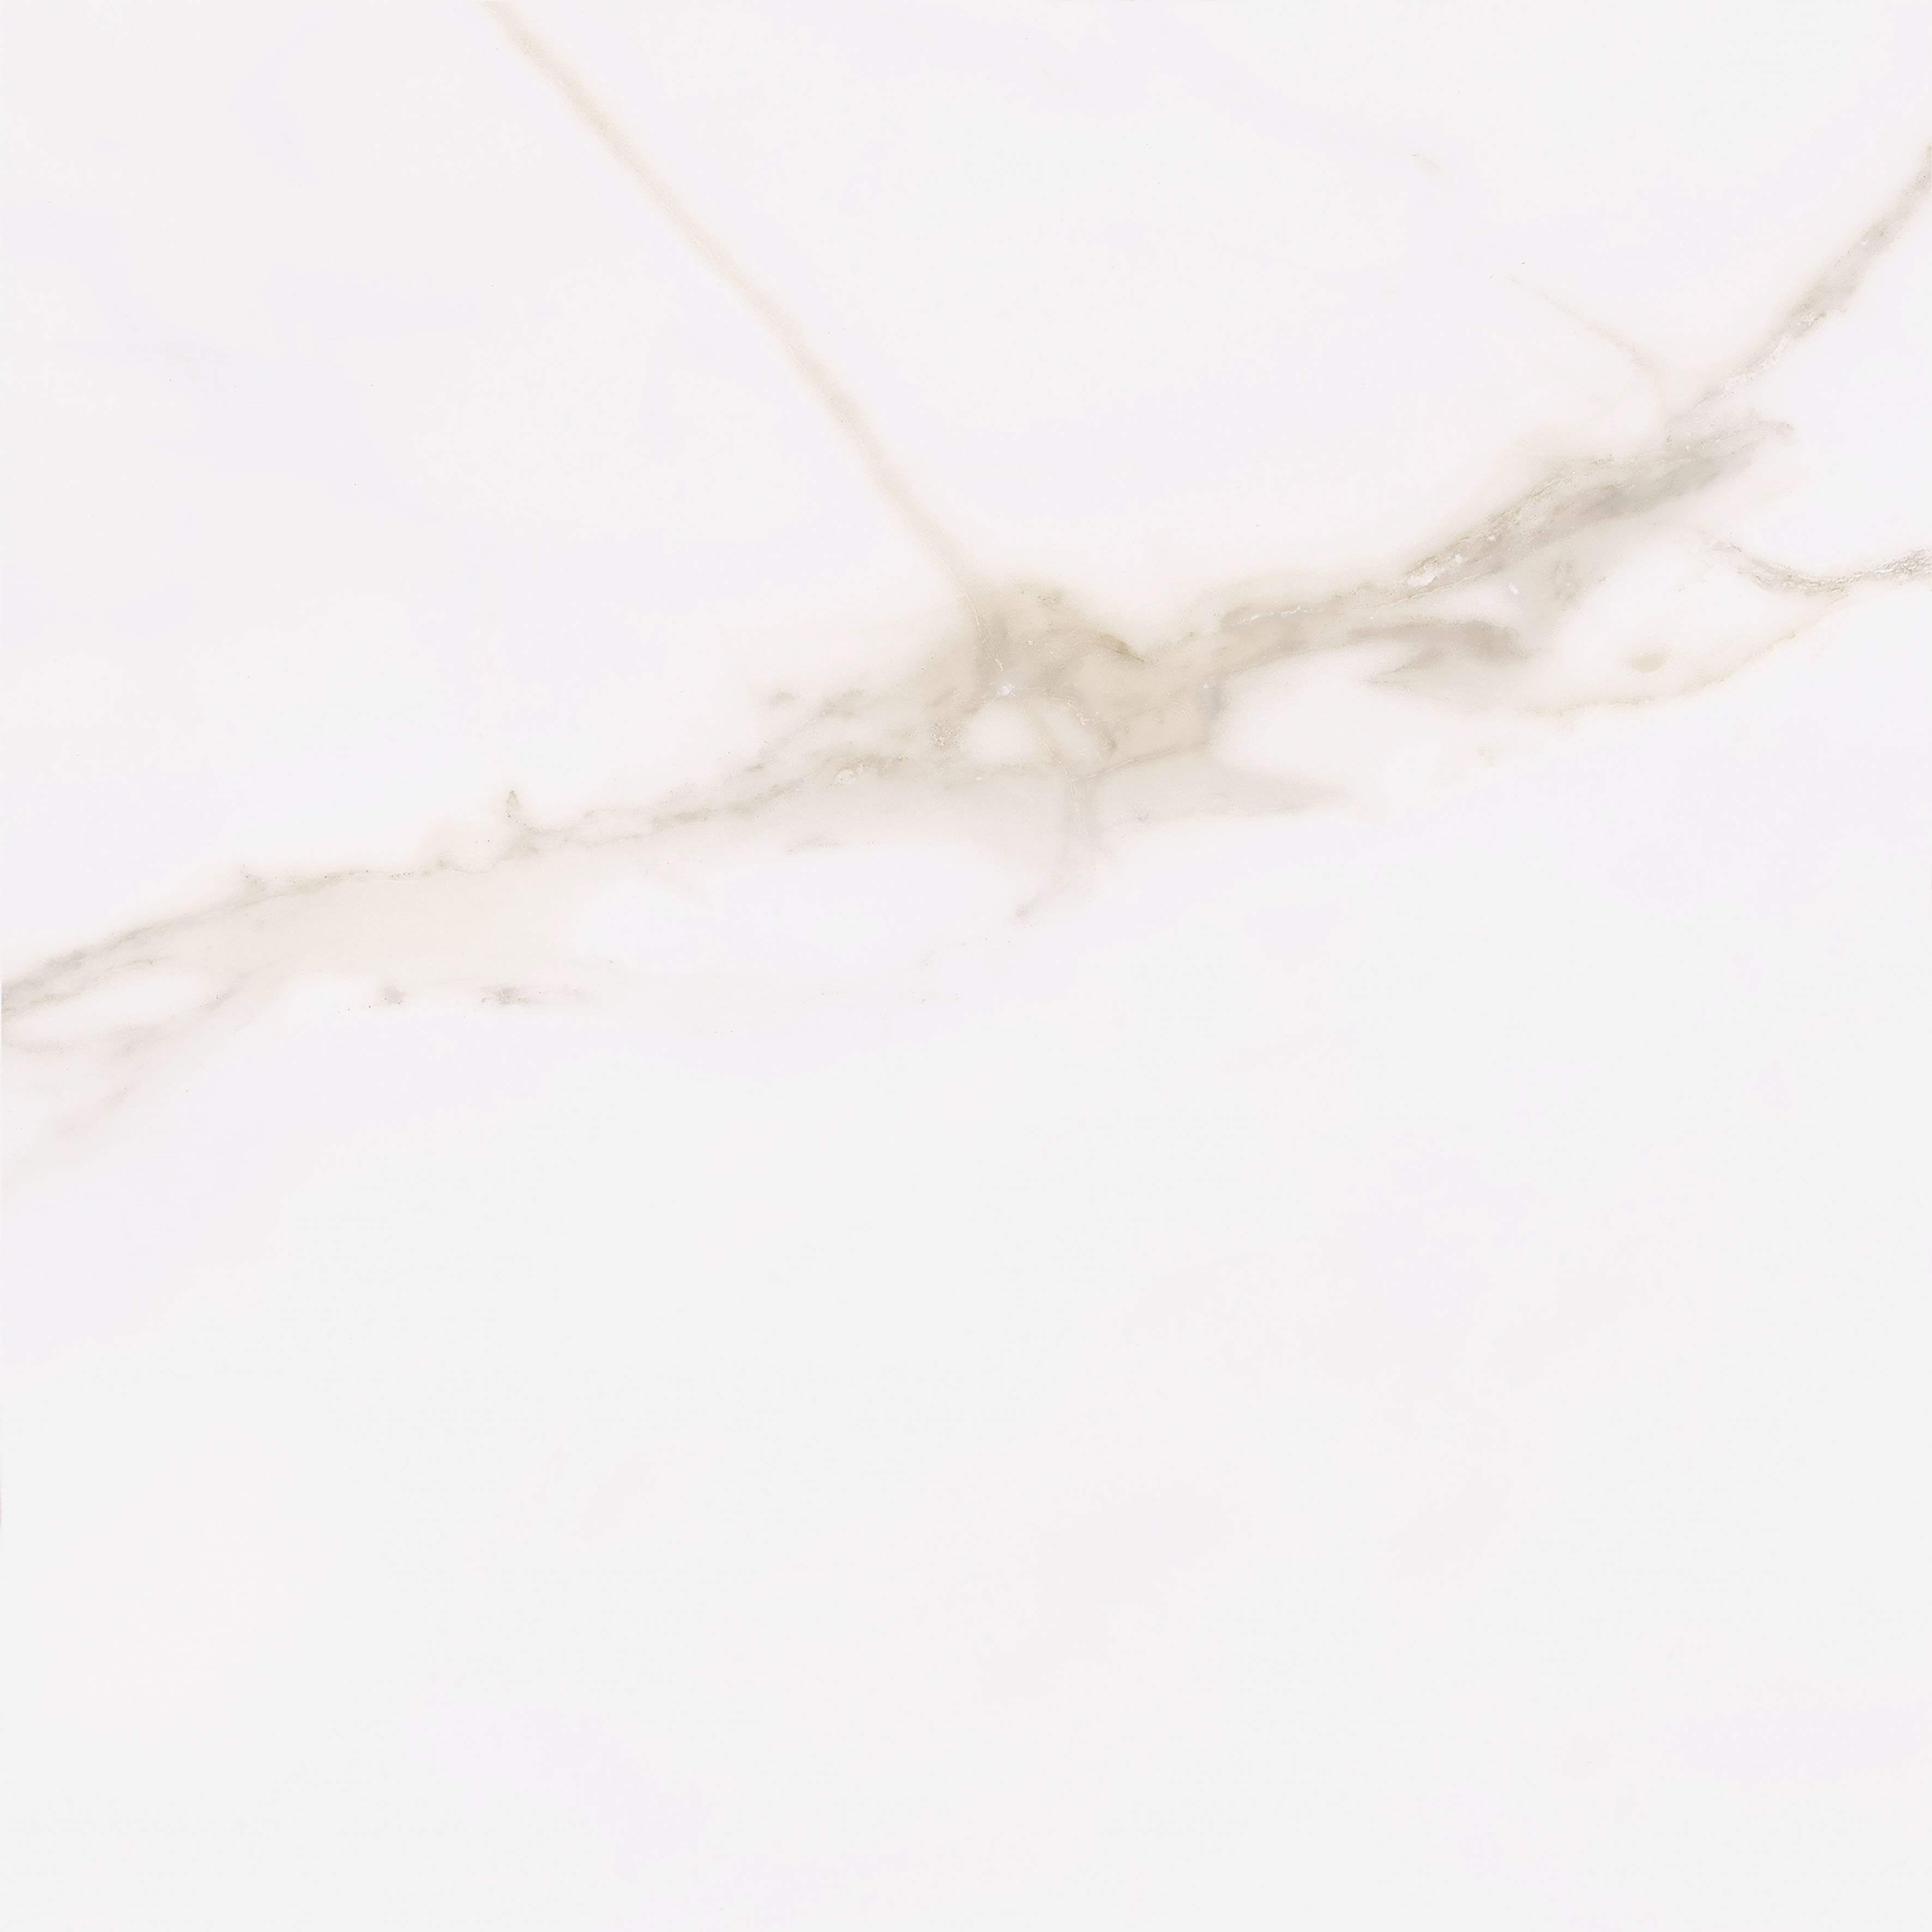 Vanezia Gres Kalmar Bodenfliesen Marmoroptik Weiß glänzend 60x60 cm rekt. 